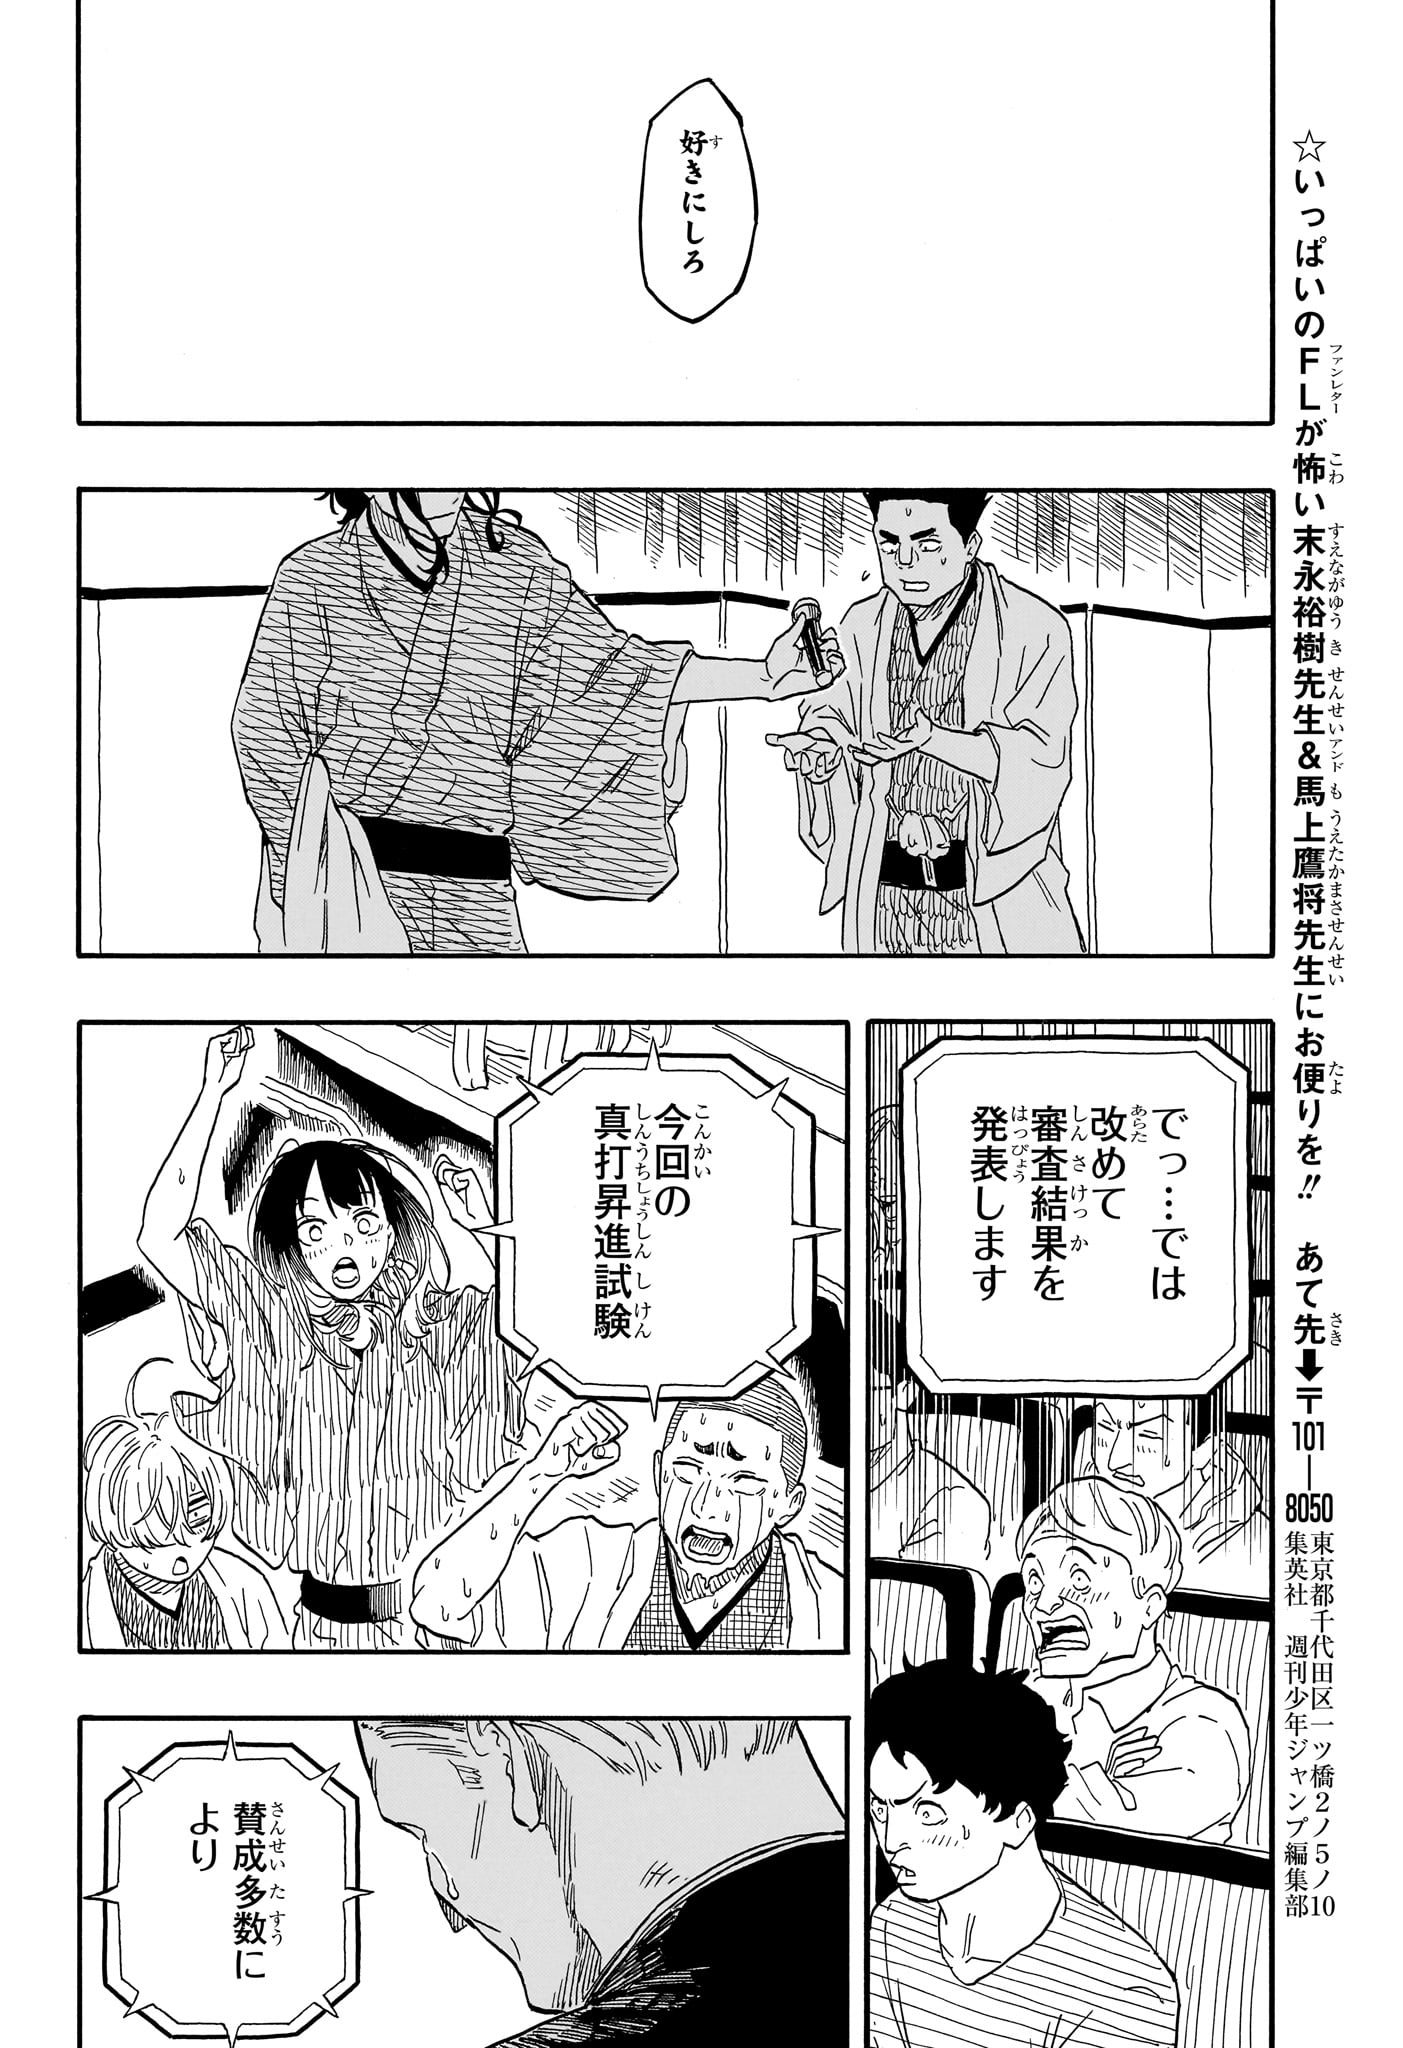 Akane-Banashi - Chapter 116 - Page 18